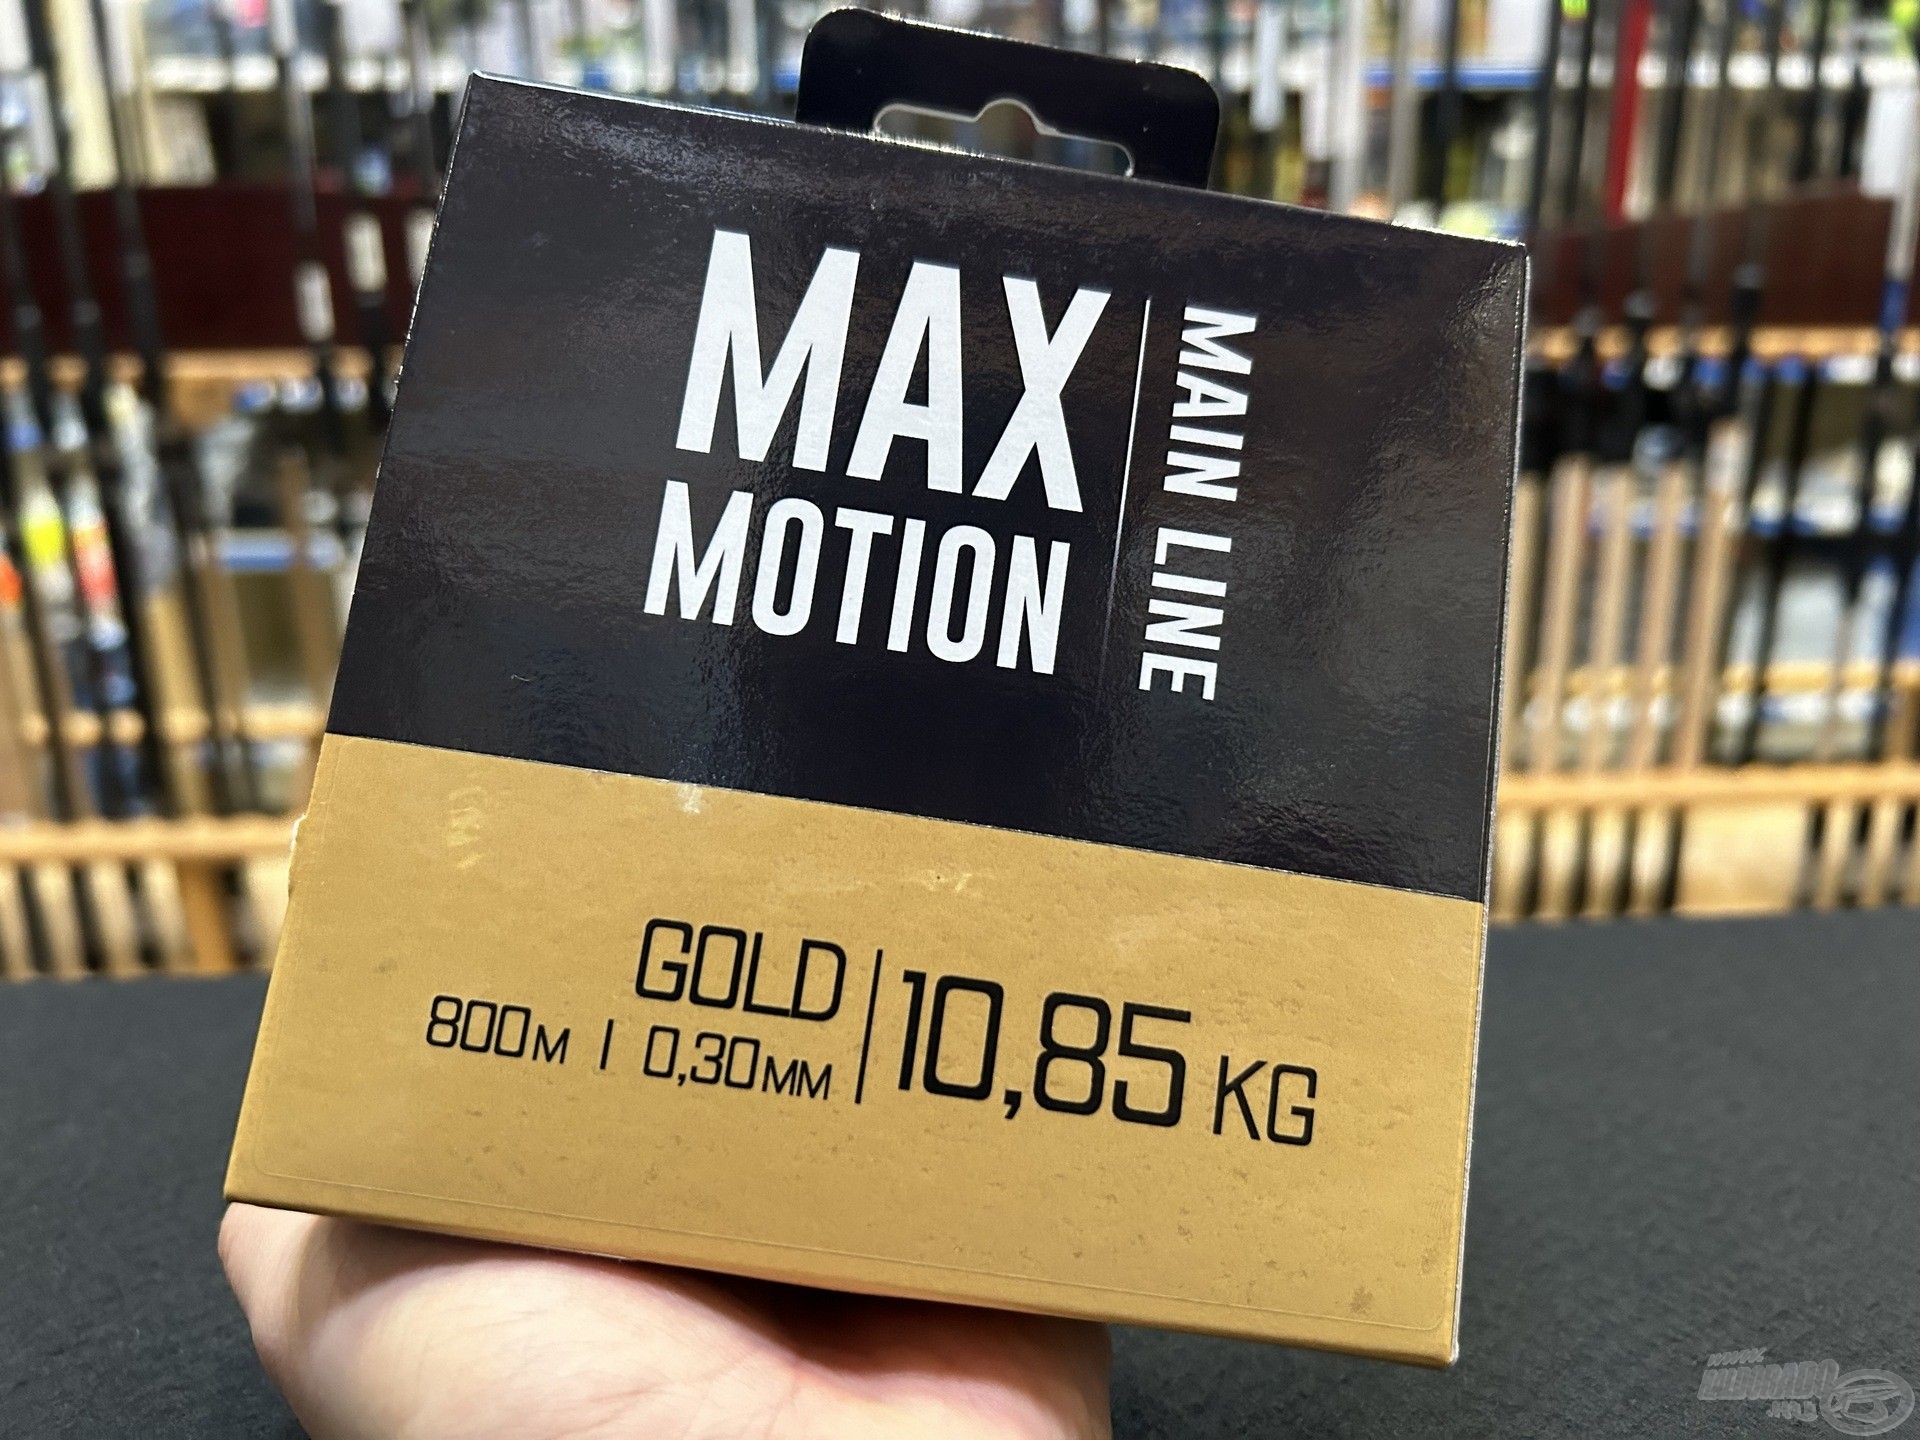 A Max Motion zsinórcsalád kedvező árával és kiváló minőségével hívja fel magára a figyelmet